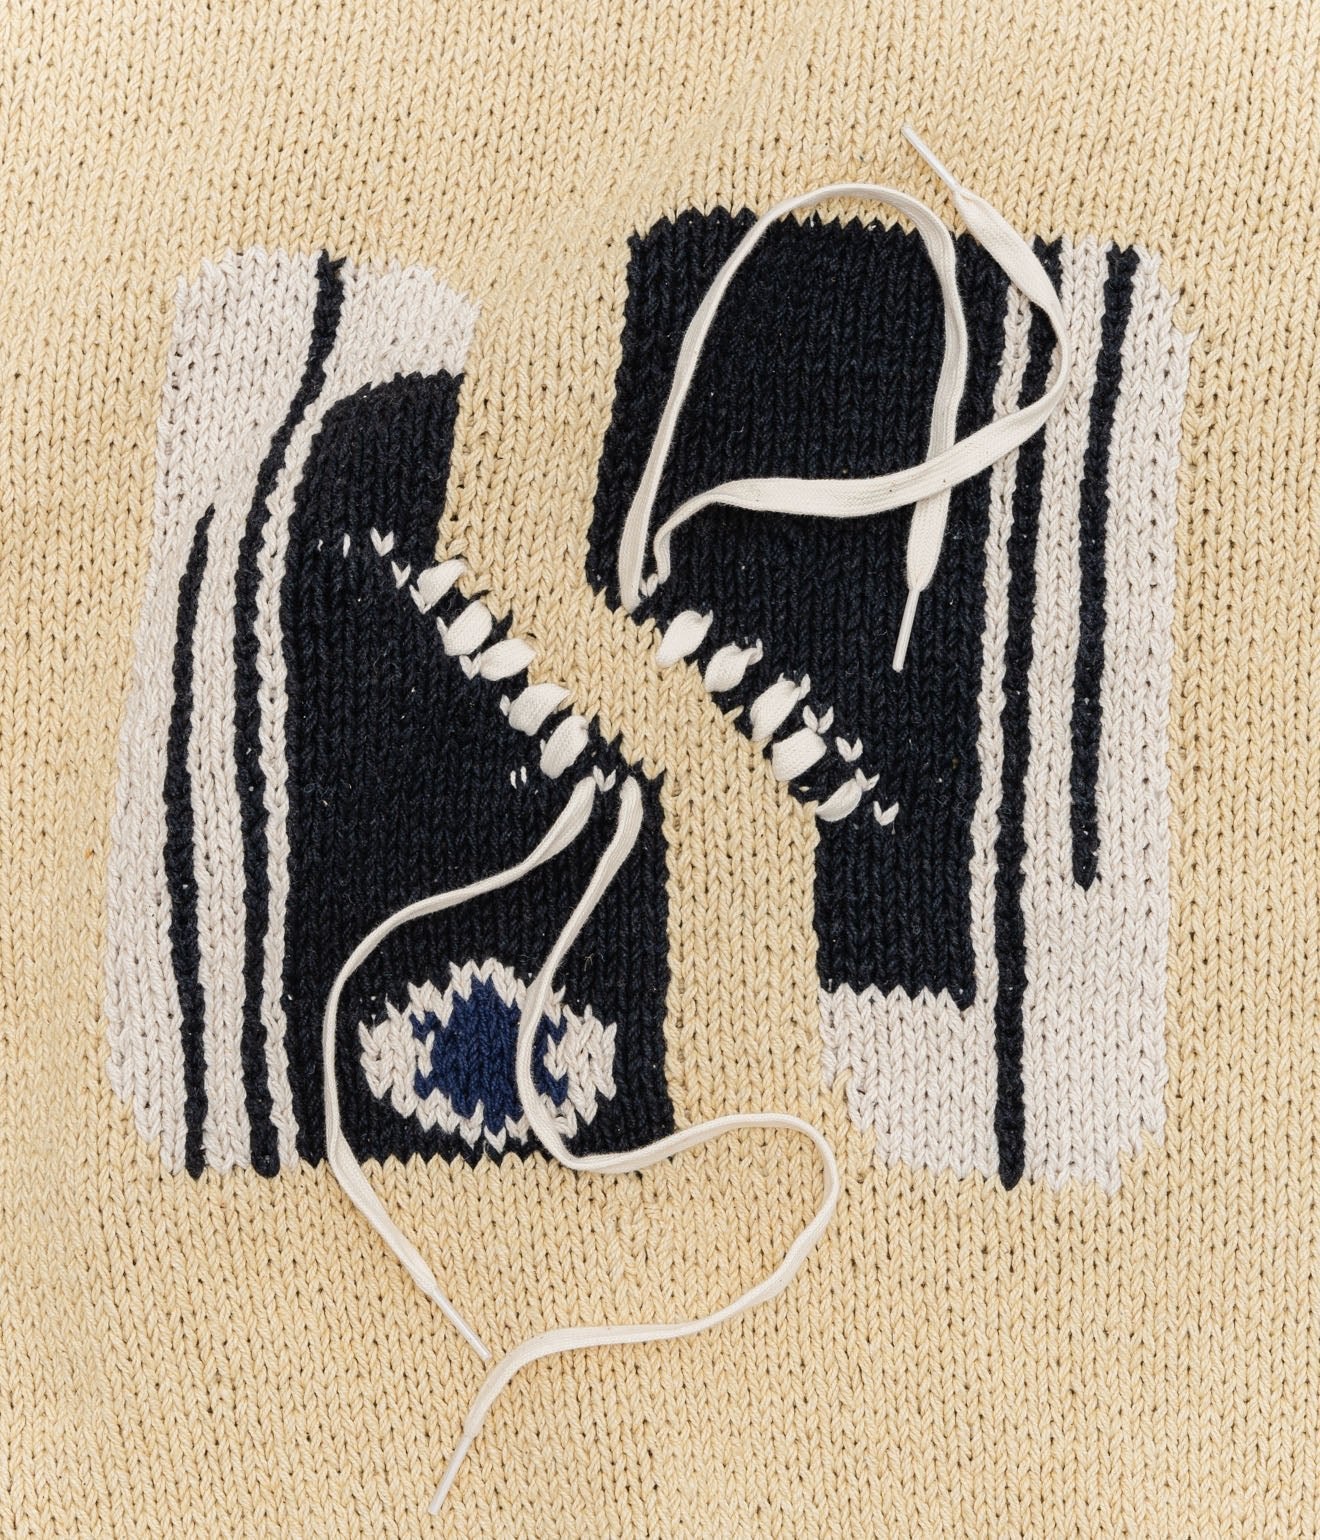 MacMahon Knitting Mills+niche. "Crew Neck Vest - Sneaker" Natural / Black - WEAREALLANIMALS